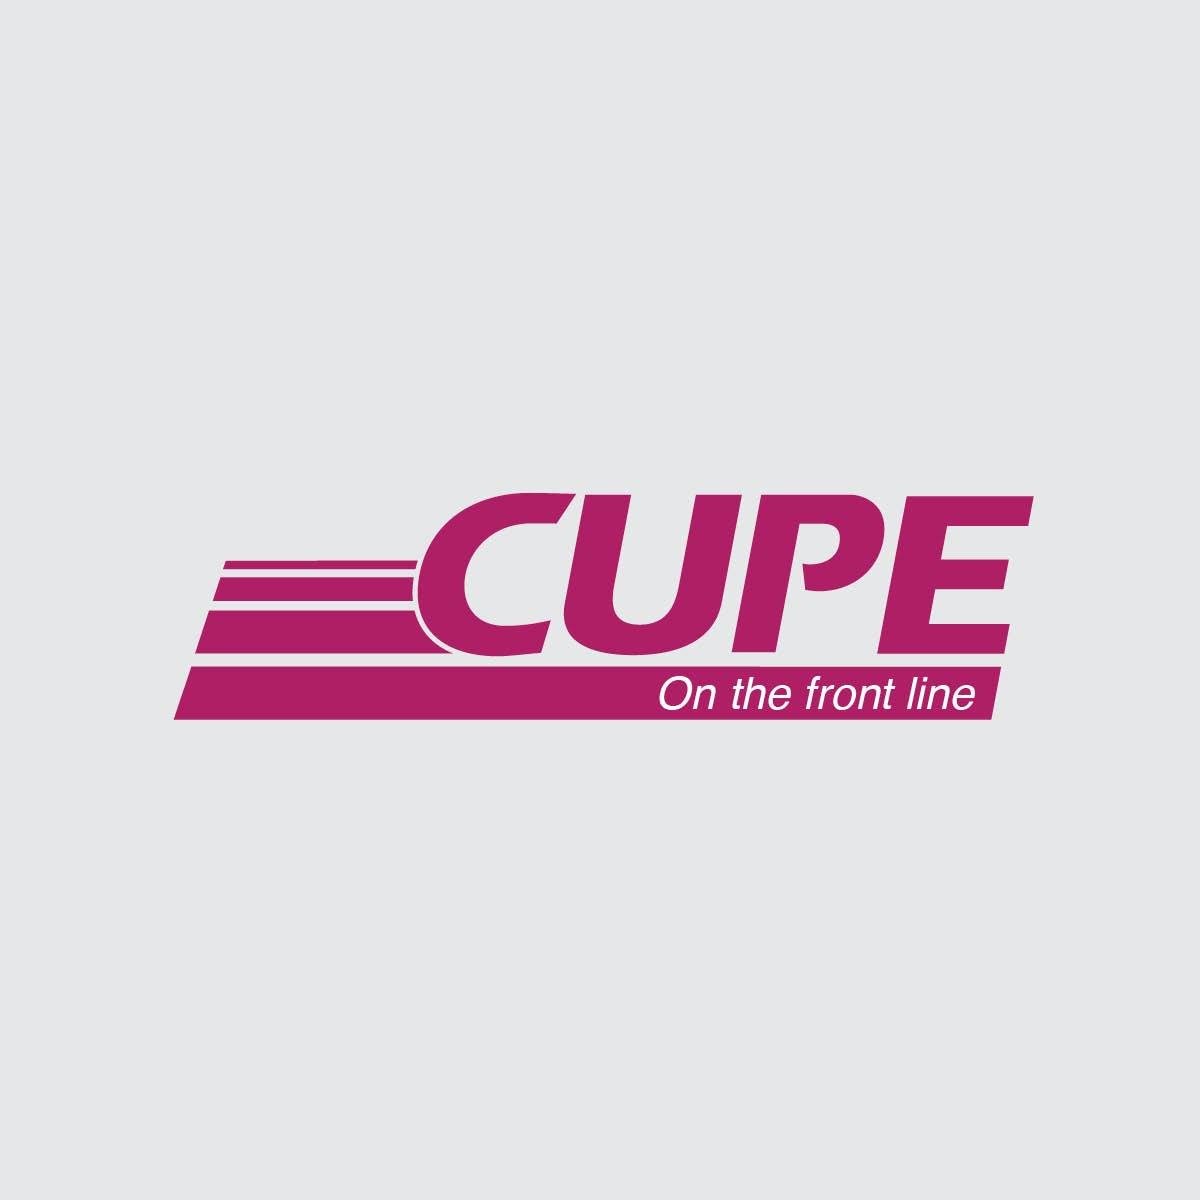 CUPE's millenium logo